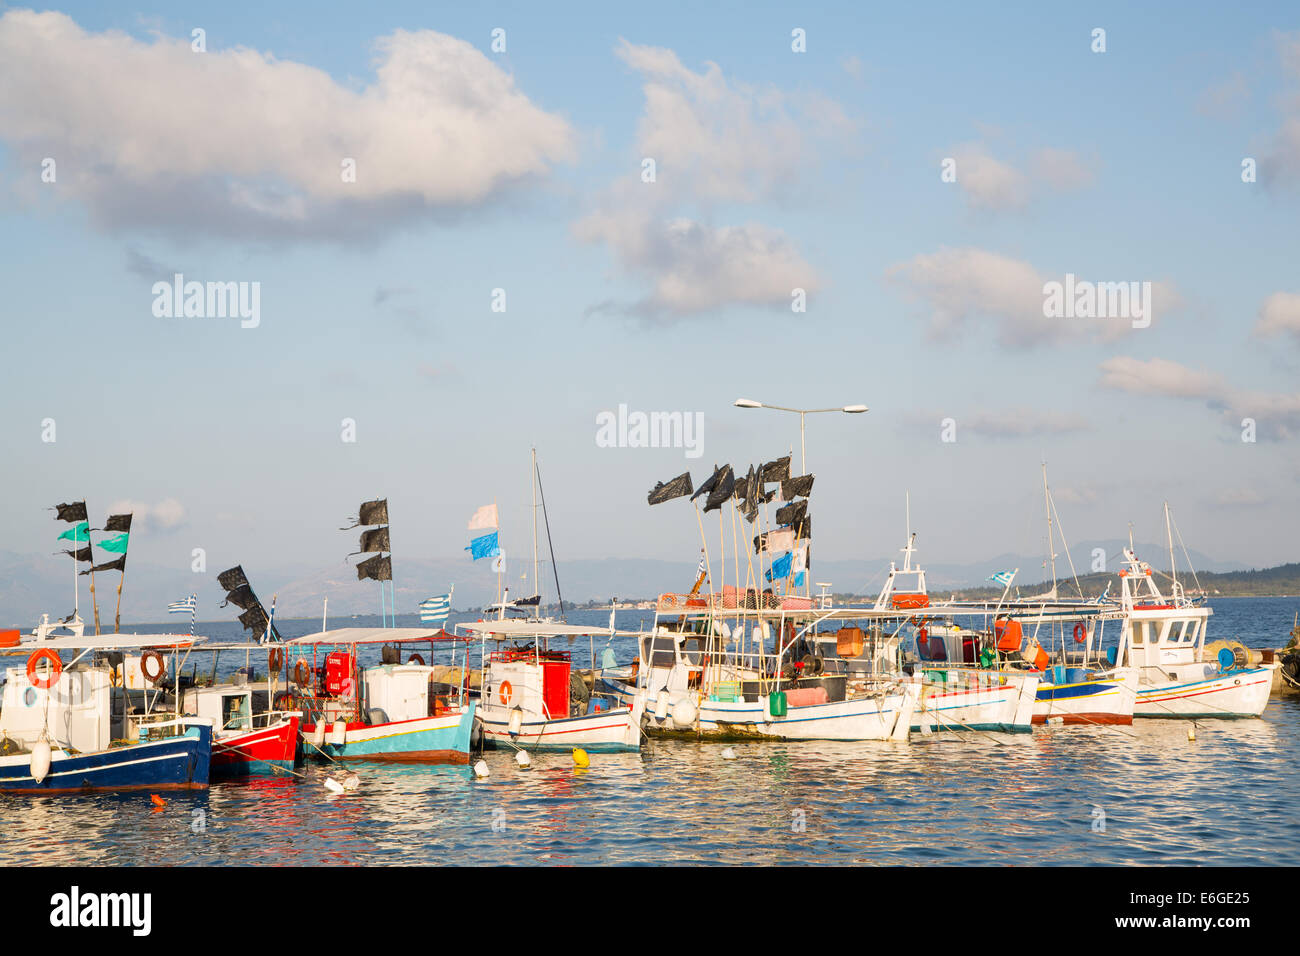 Sehenswürdigkeiten in Griechenland: traditionelle Fischerboote auf den griechischen Inseln in einem Hafen. Stockfoto